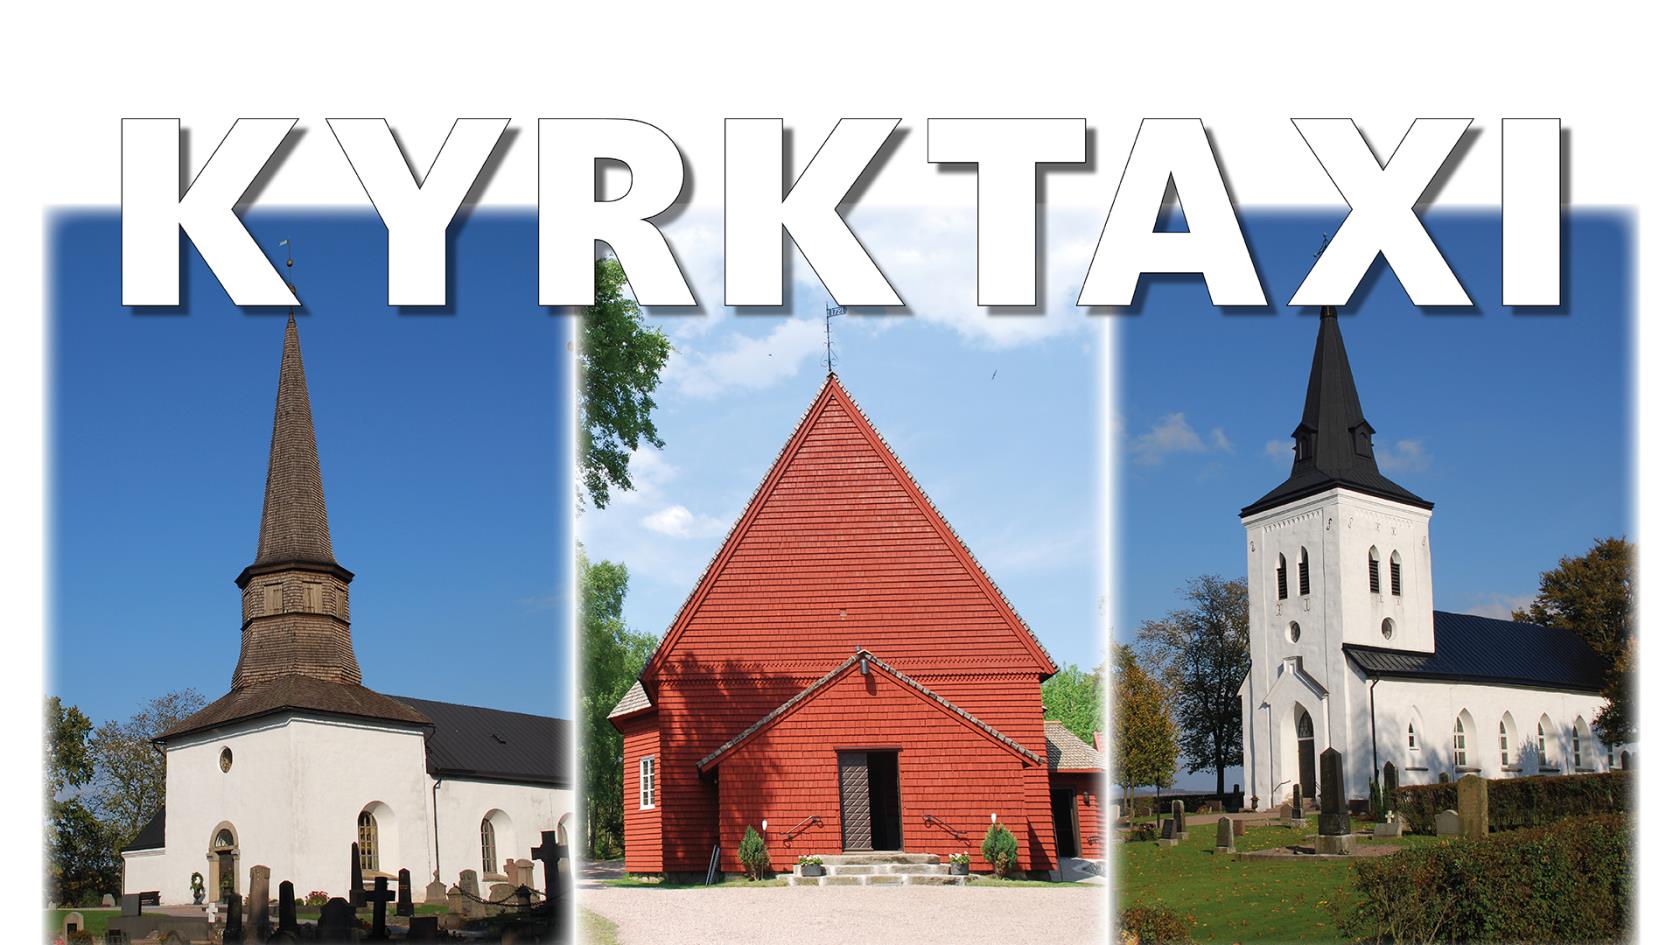 Söndrums kyrka, S:t Olofs kapell och Vapnö kyrka med texten Kyrktaxi.